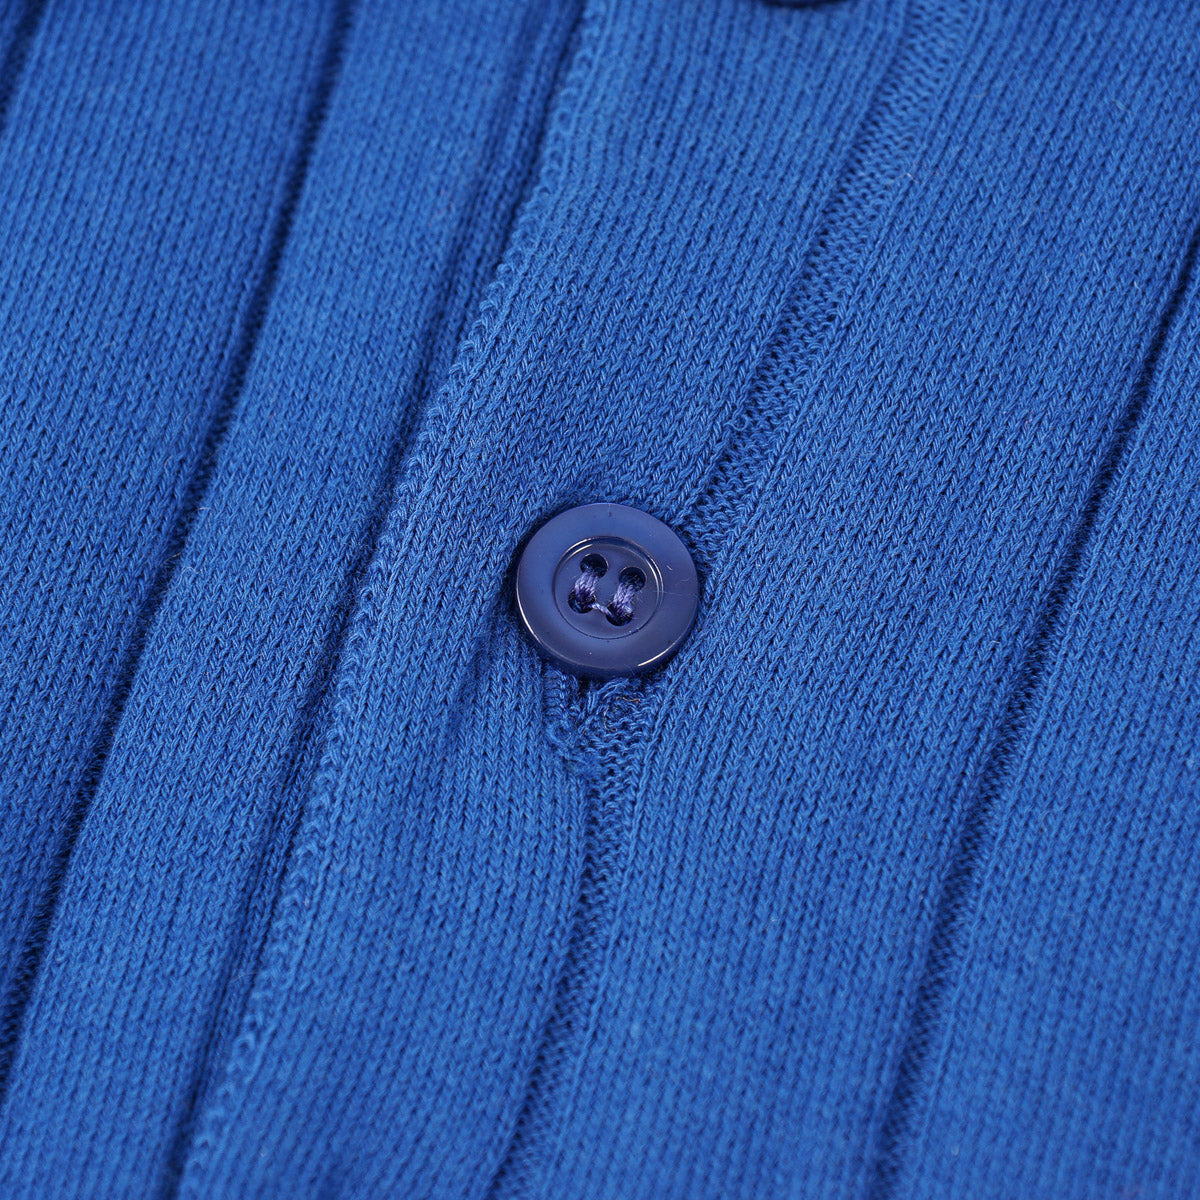 Sartorio Short-Sleeve Cotton Polo Sweater - Top Shelf Apparel